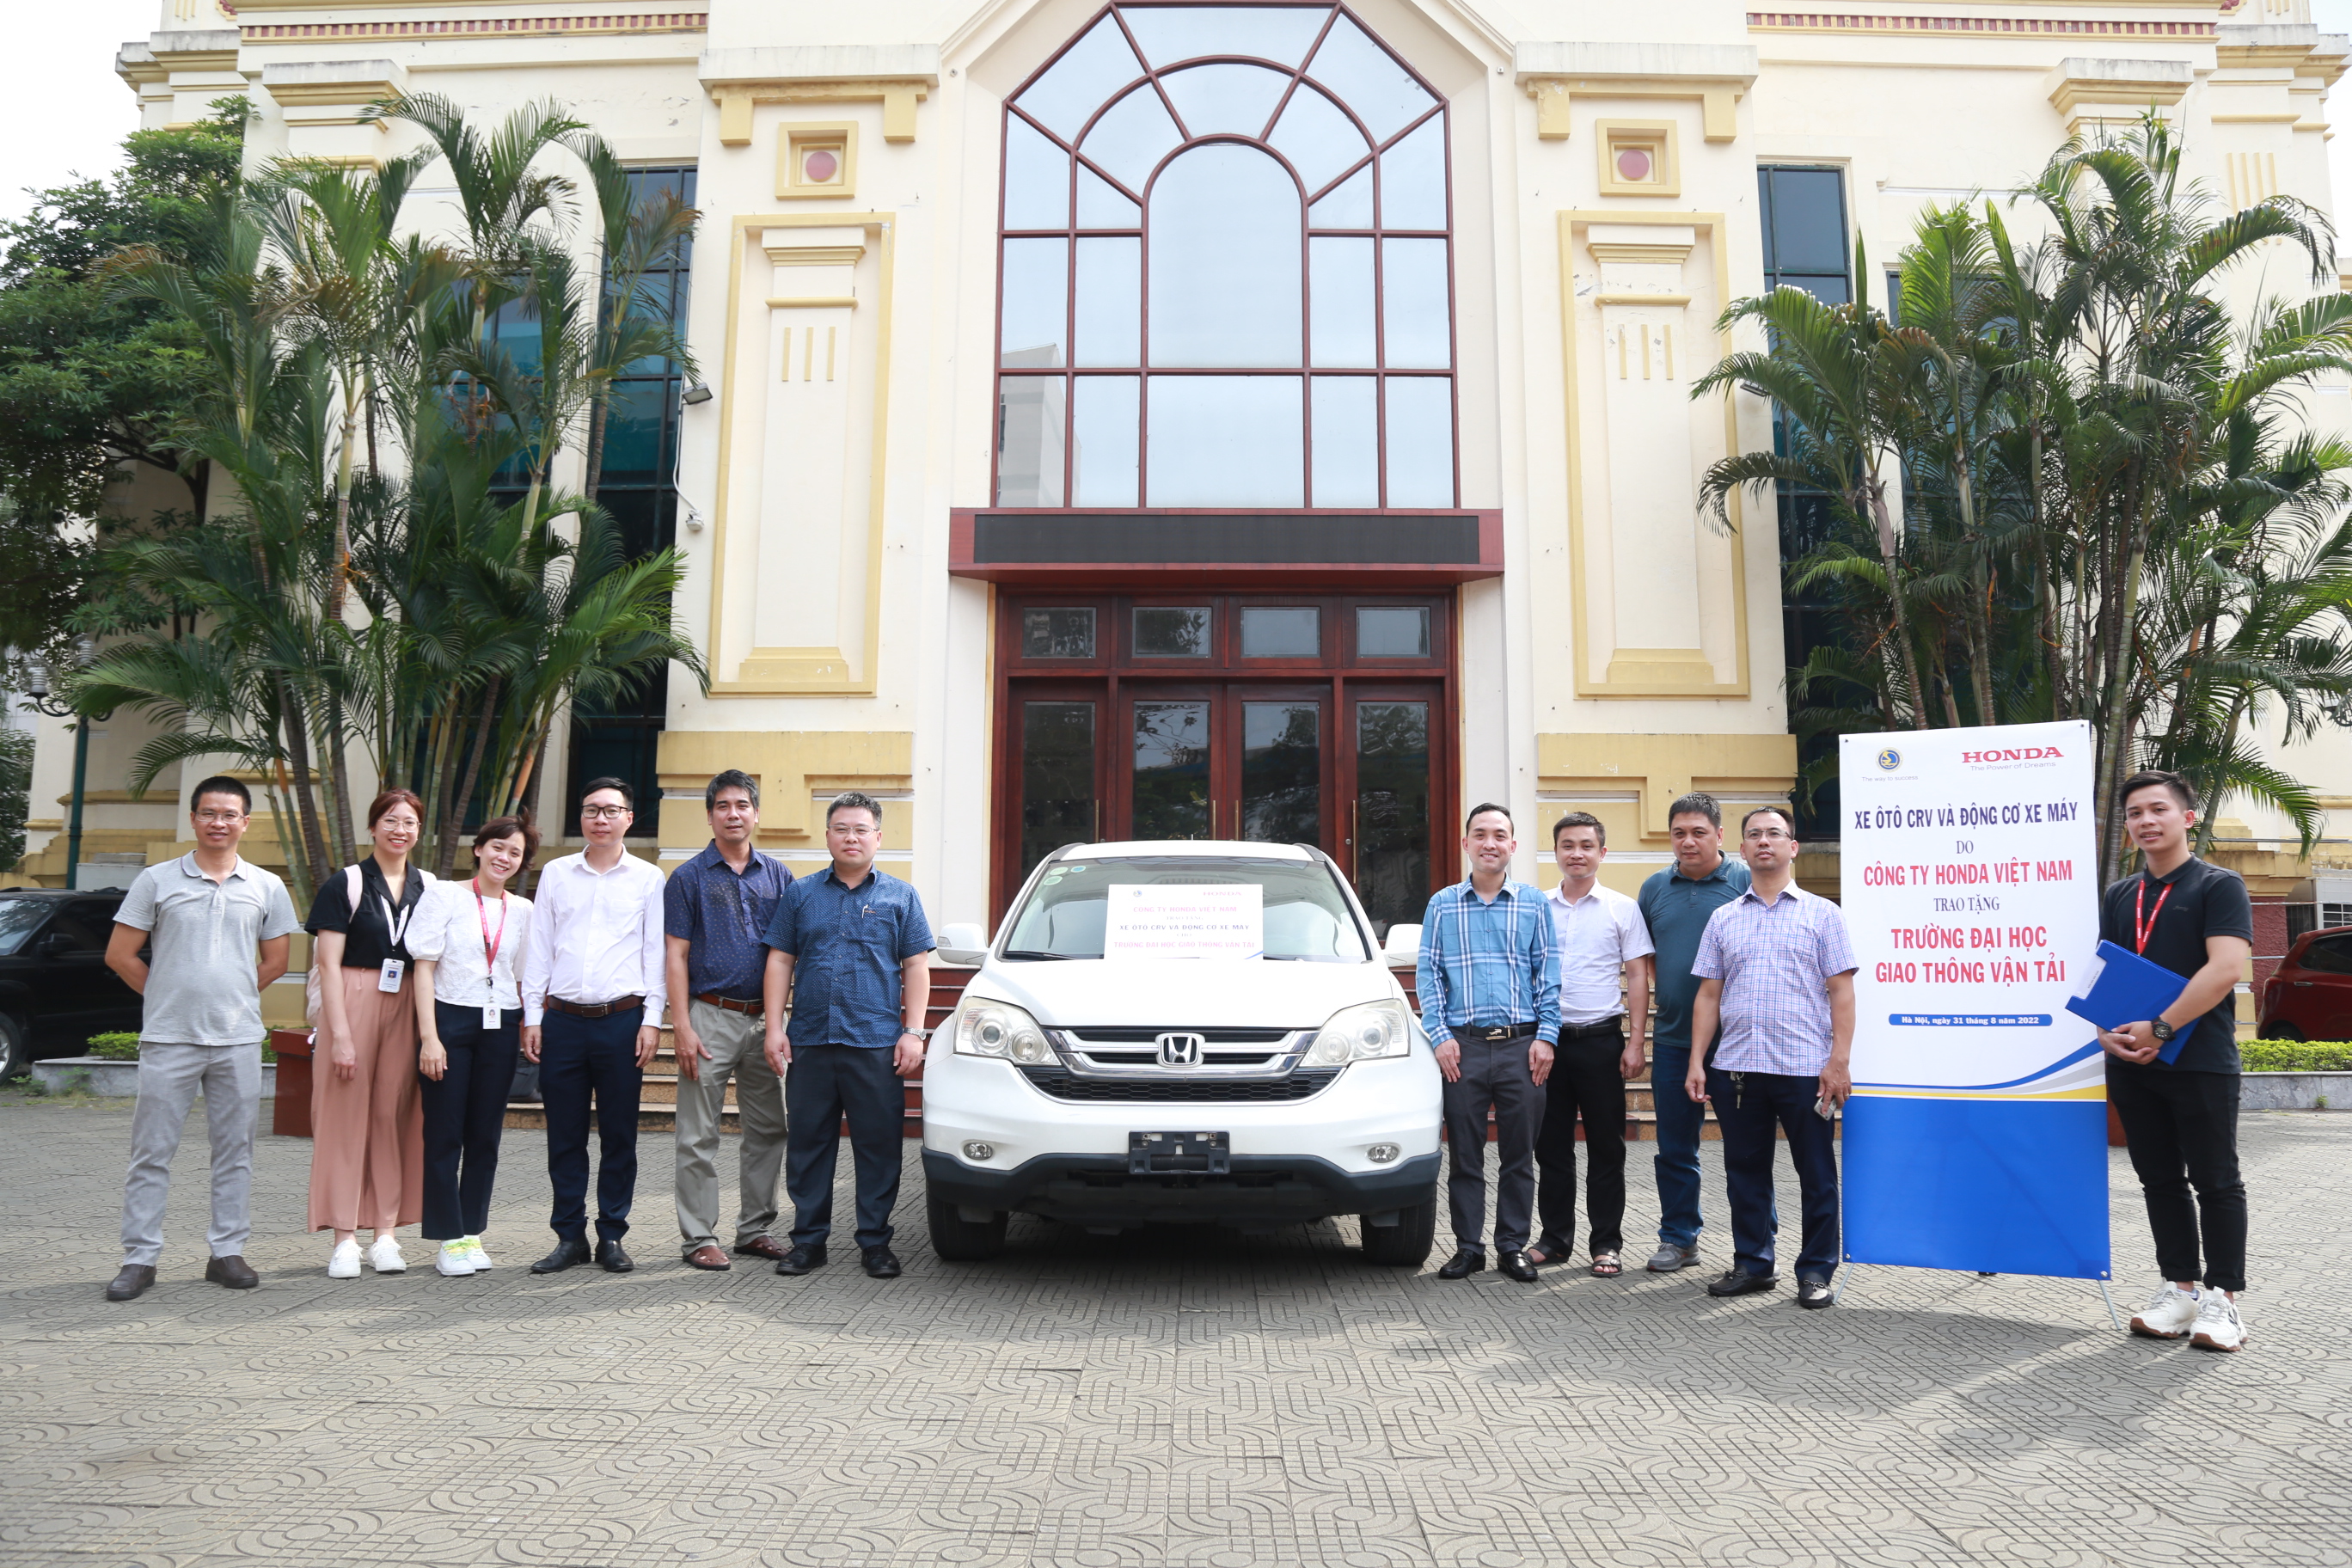 Trường Đại học GTVT tiếp nhận thiết bị do Cty Honda Việt Nam tài trợ